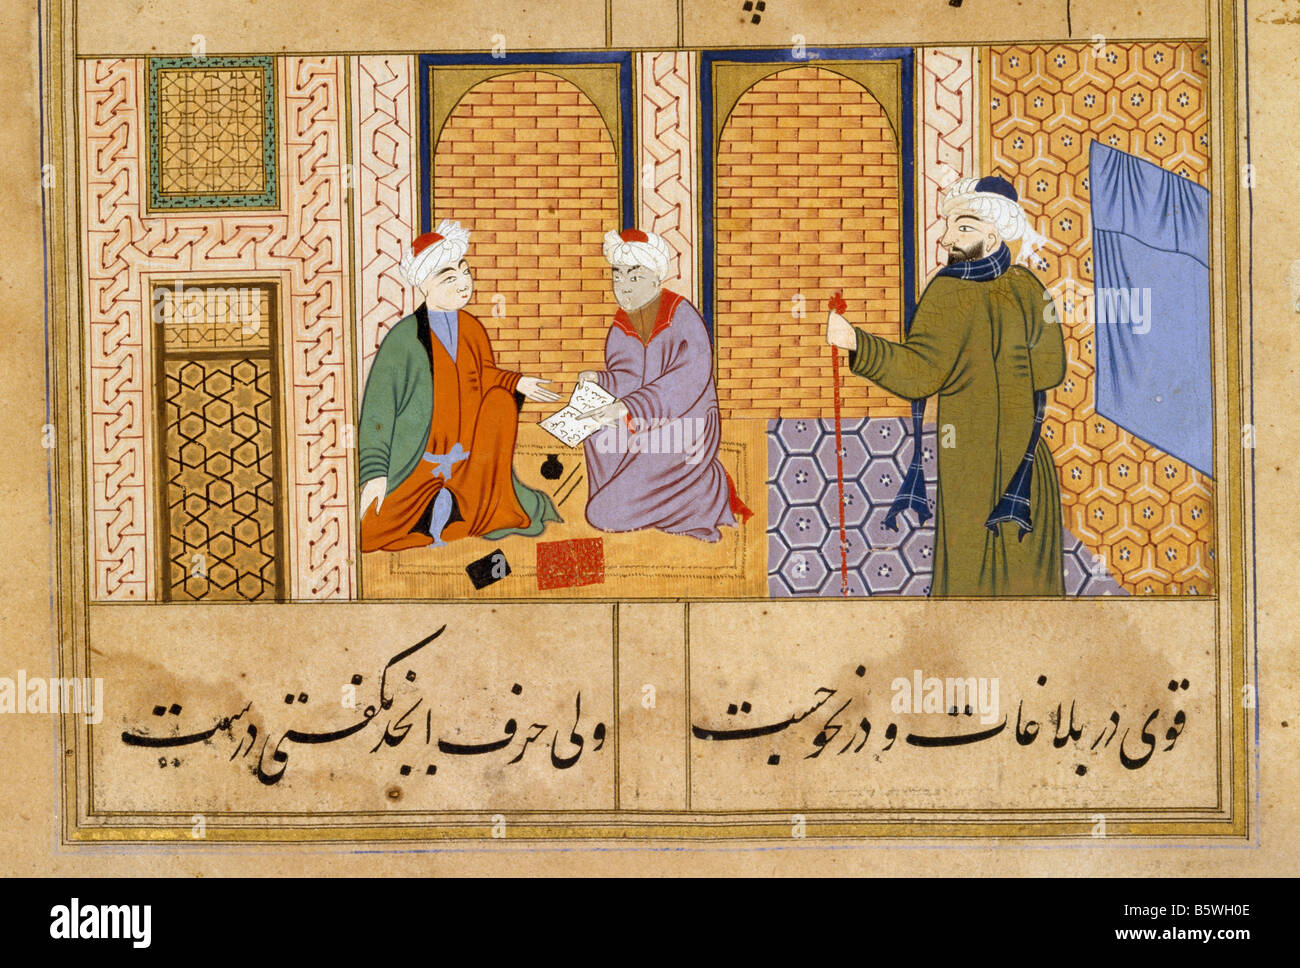 Fly-hoja de Bustan-i-Sadi la ilustración de libros islámicos inscrita: fabricado por Nasir Shah Khilji de Mandu presentó a Akbar al asedio Foto de stock